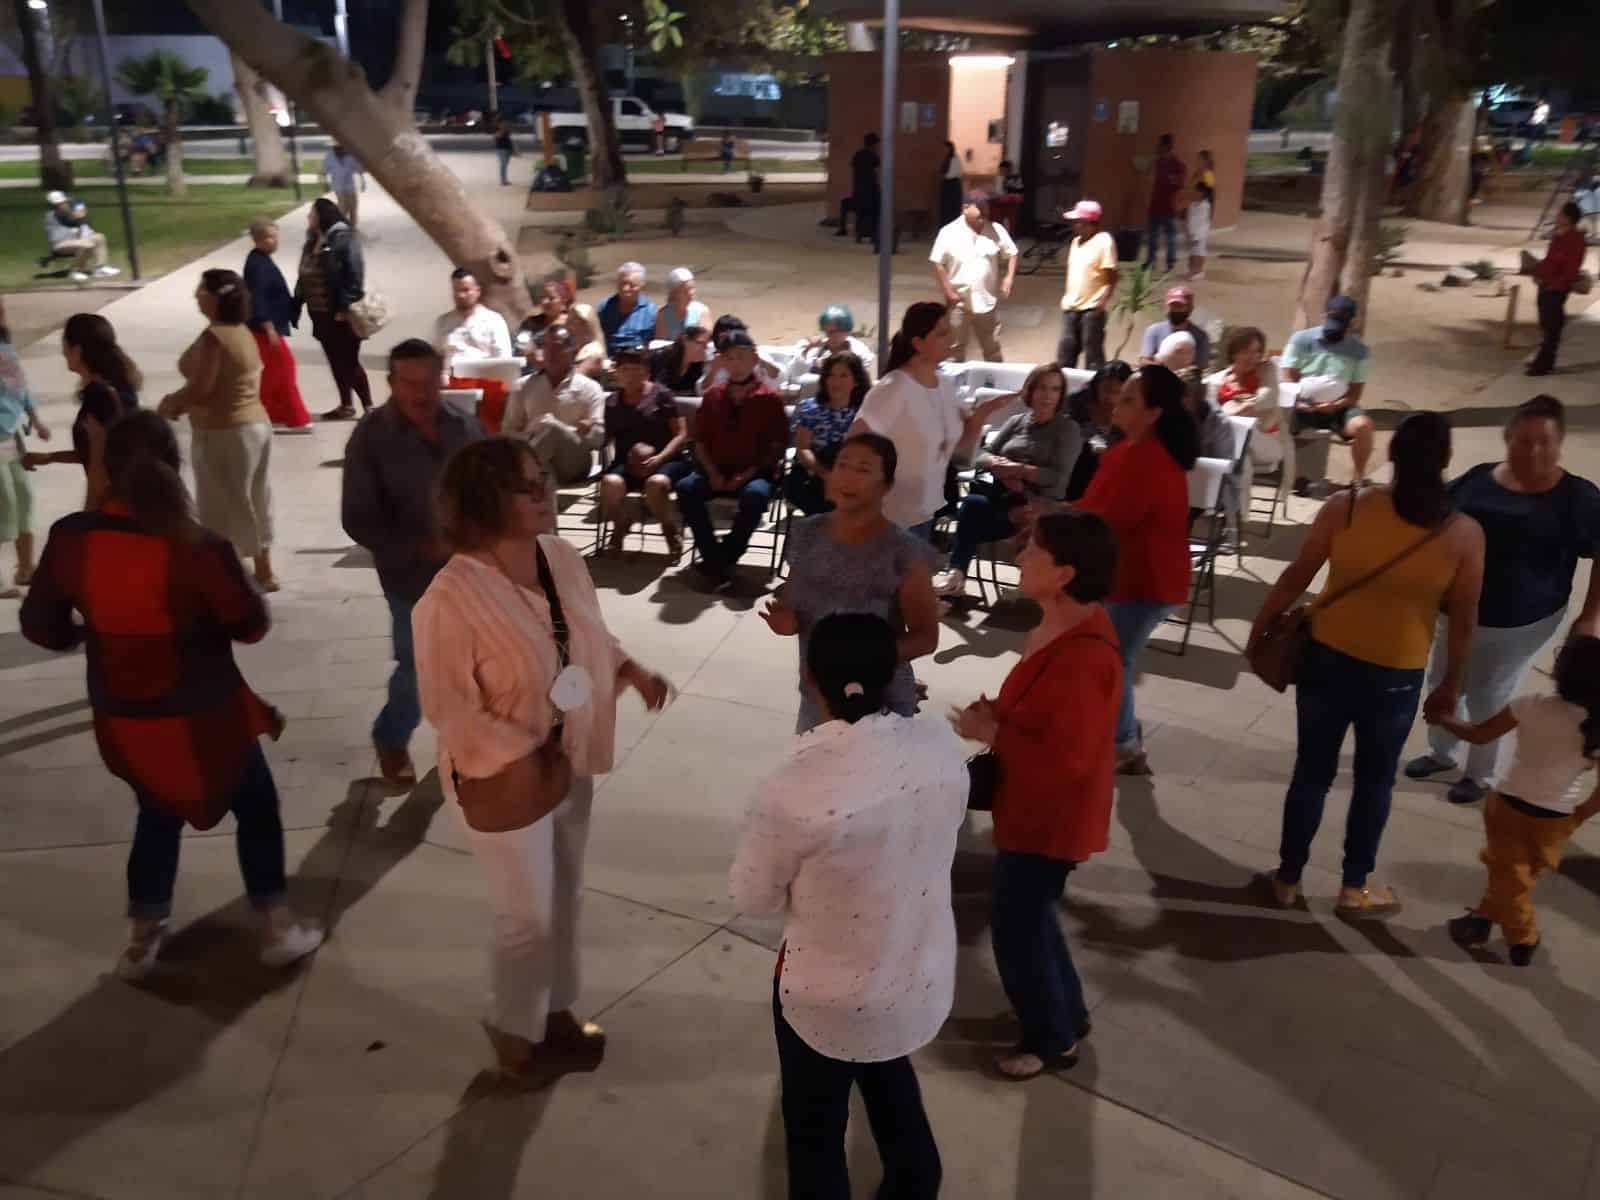 A ritmo de música latina más de 100 personas participan en "Bailongo de 10" en Parque Revolución